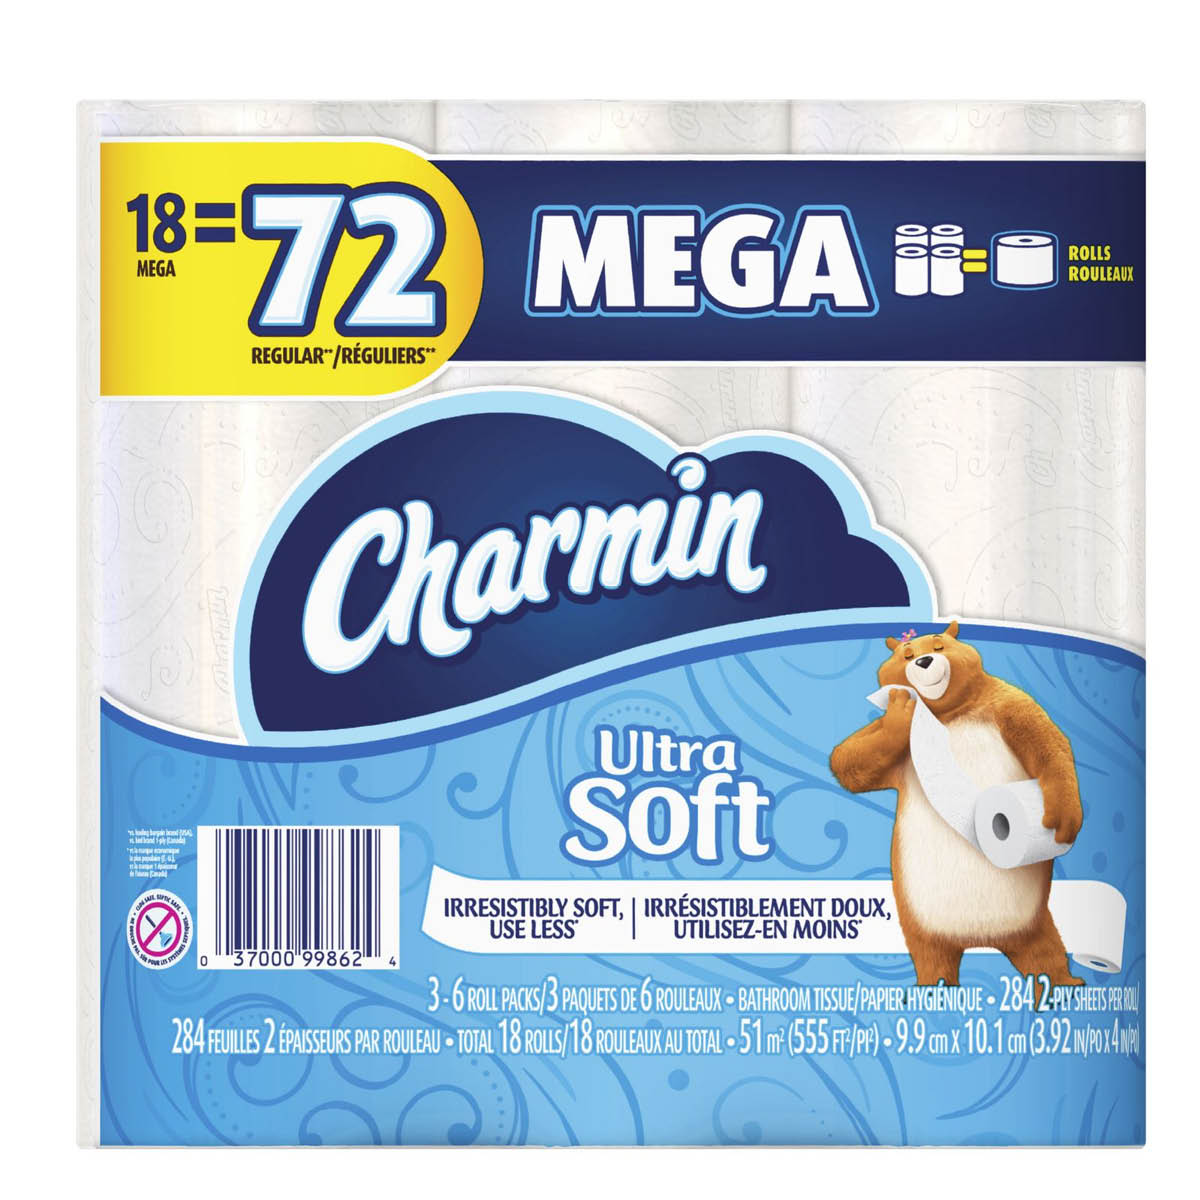 Charmin Ultra Soft Mega Toilet Paper, (18 Mega=72 Reg)